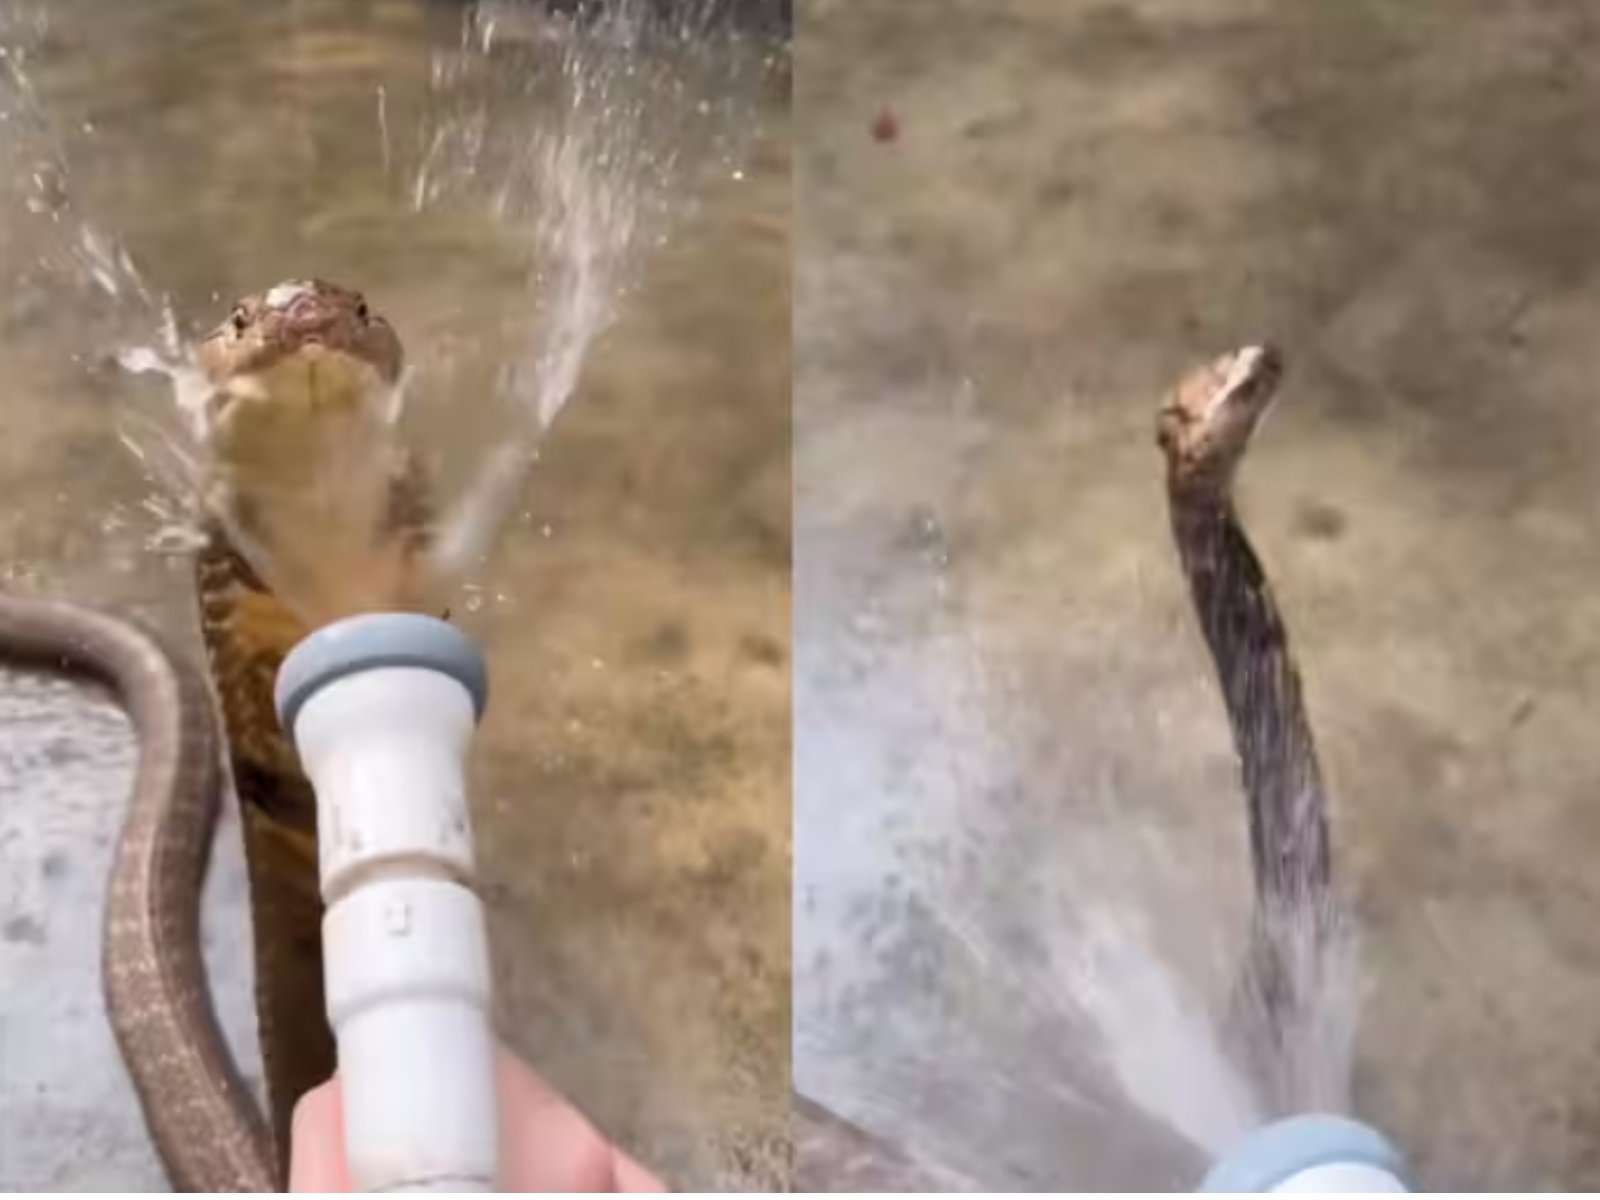 King Cobra Ka Video - पानी के शावर में झूमता दिखा खतरनाक किंग कोबरा,